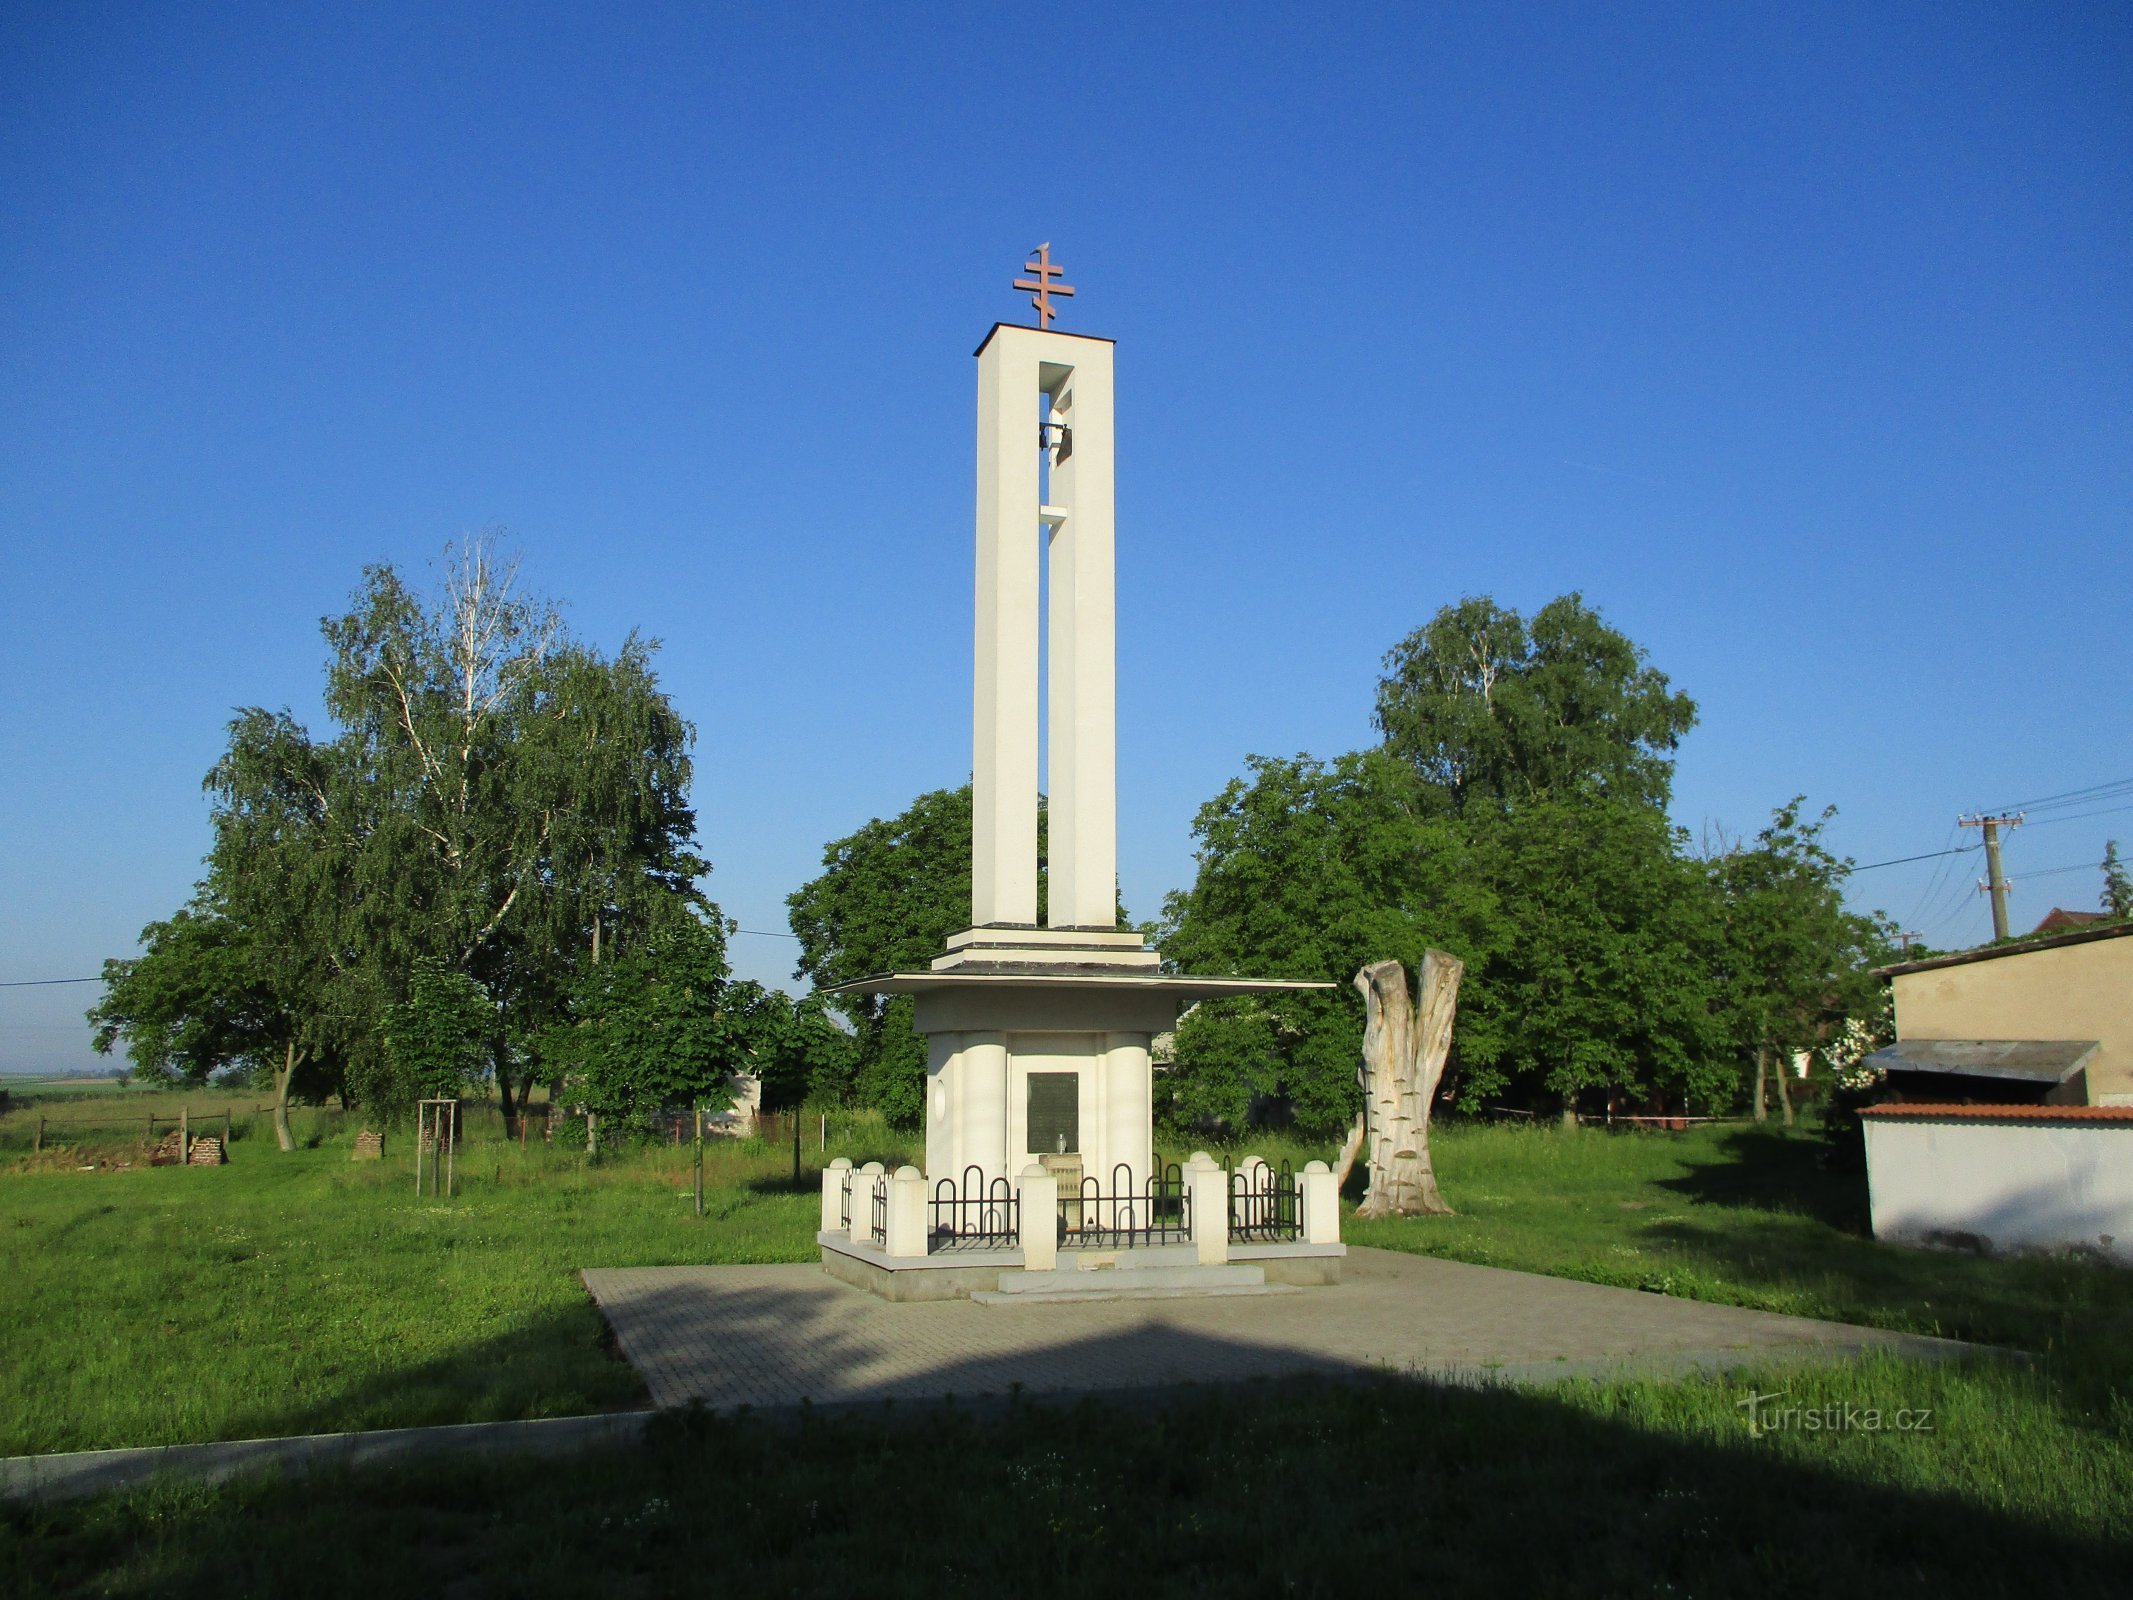 Glockenturm der tschechoslowakischen Kirche (Praskačka)